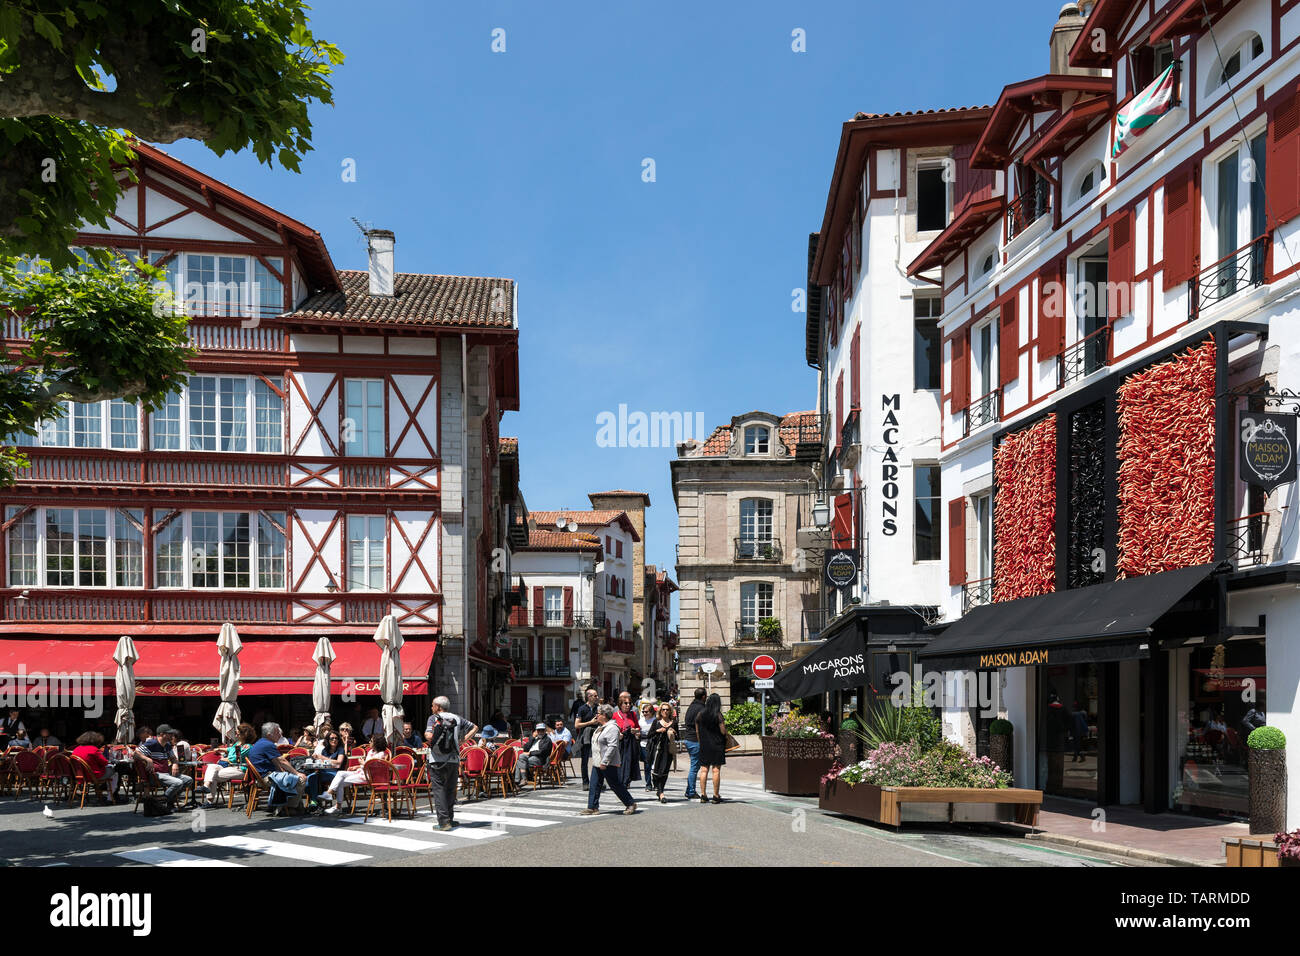 A town centre street in Saint-Jean-de-Luz, Basque Country, France Stock Photo